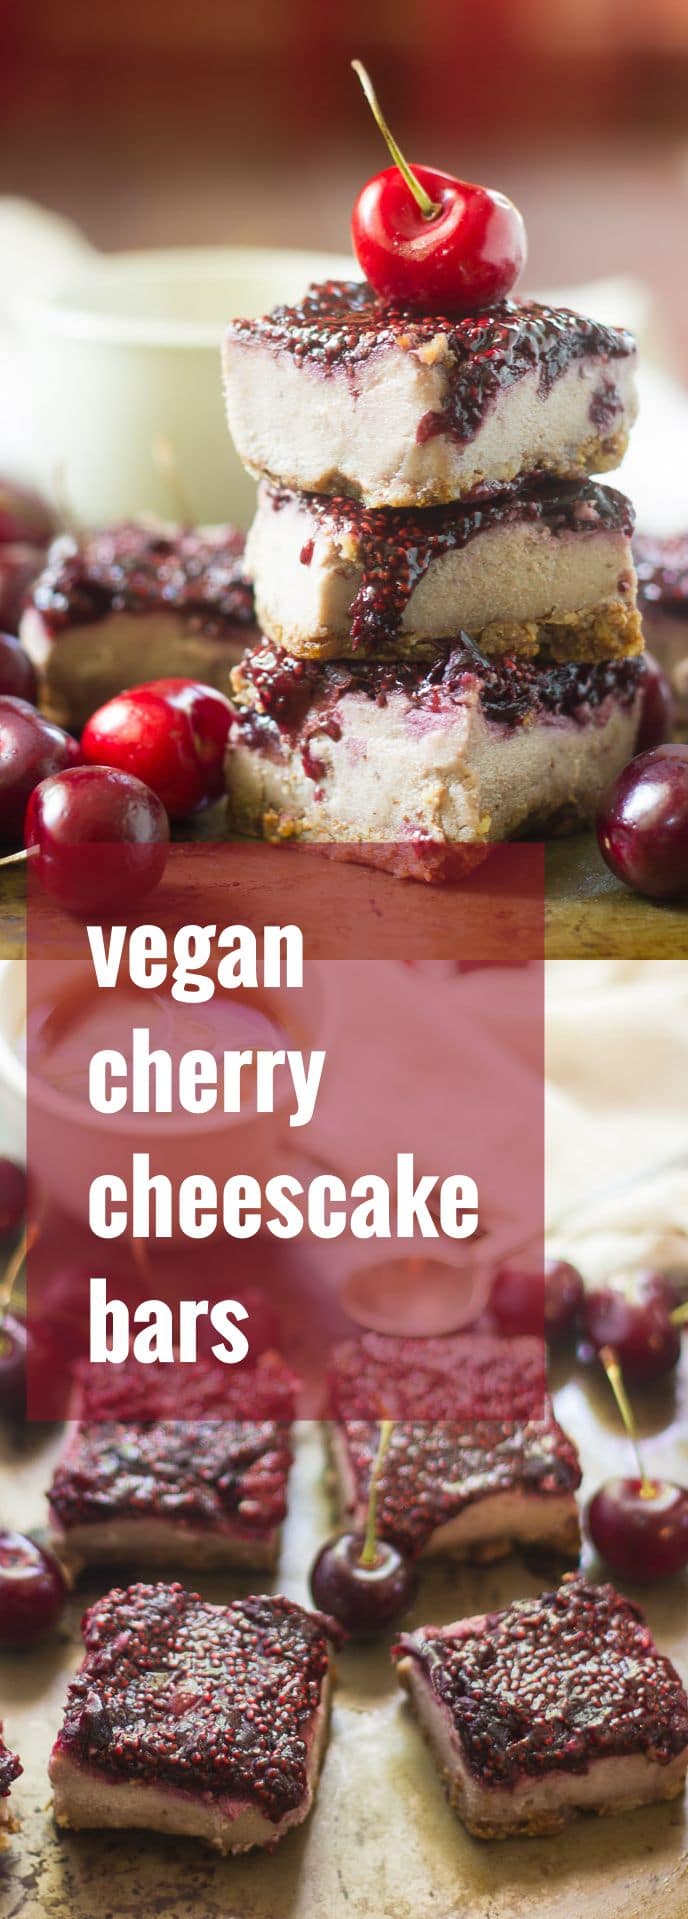 Vegan Cherry Cheesecake Bars